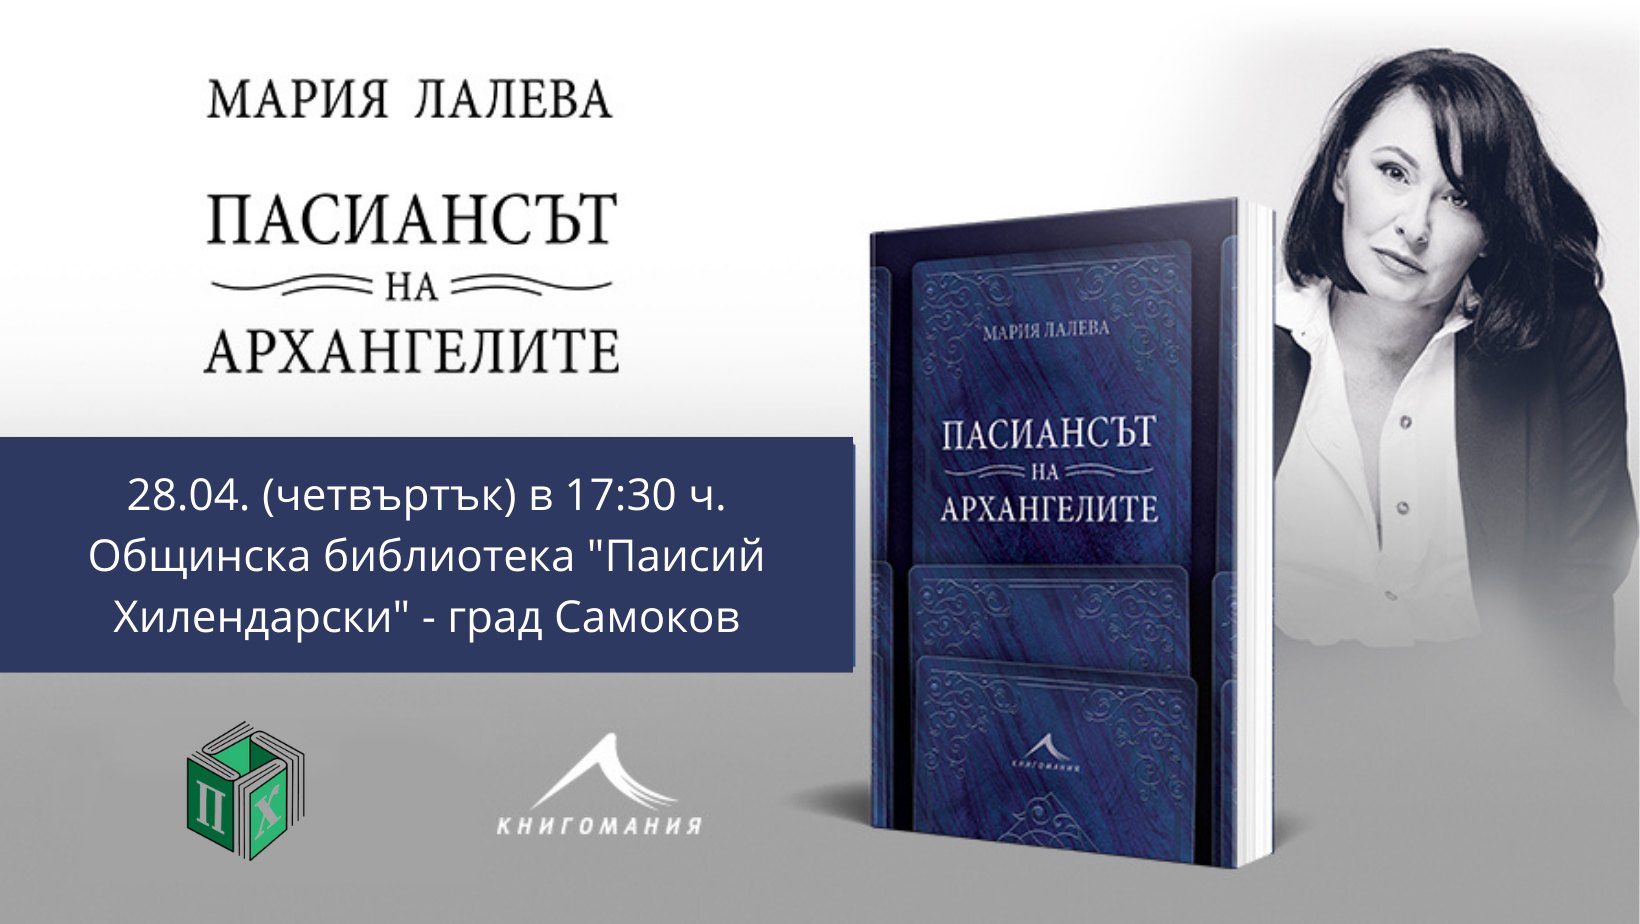 Представяне на книгата "Пасиансът на архангелите" и Мария Лалева в Самоков